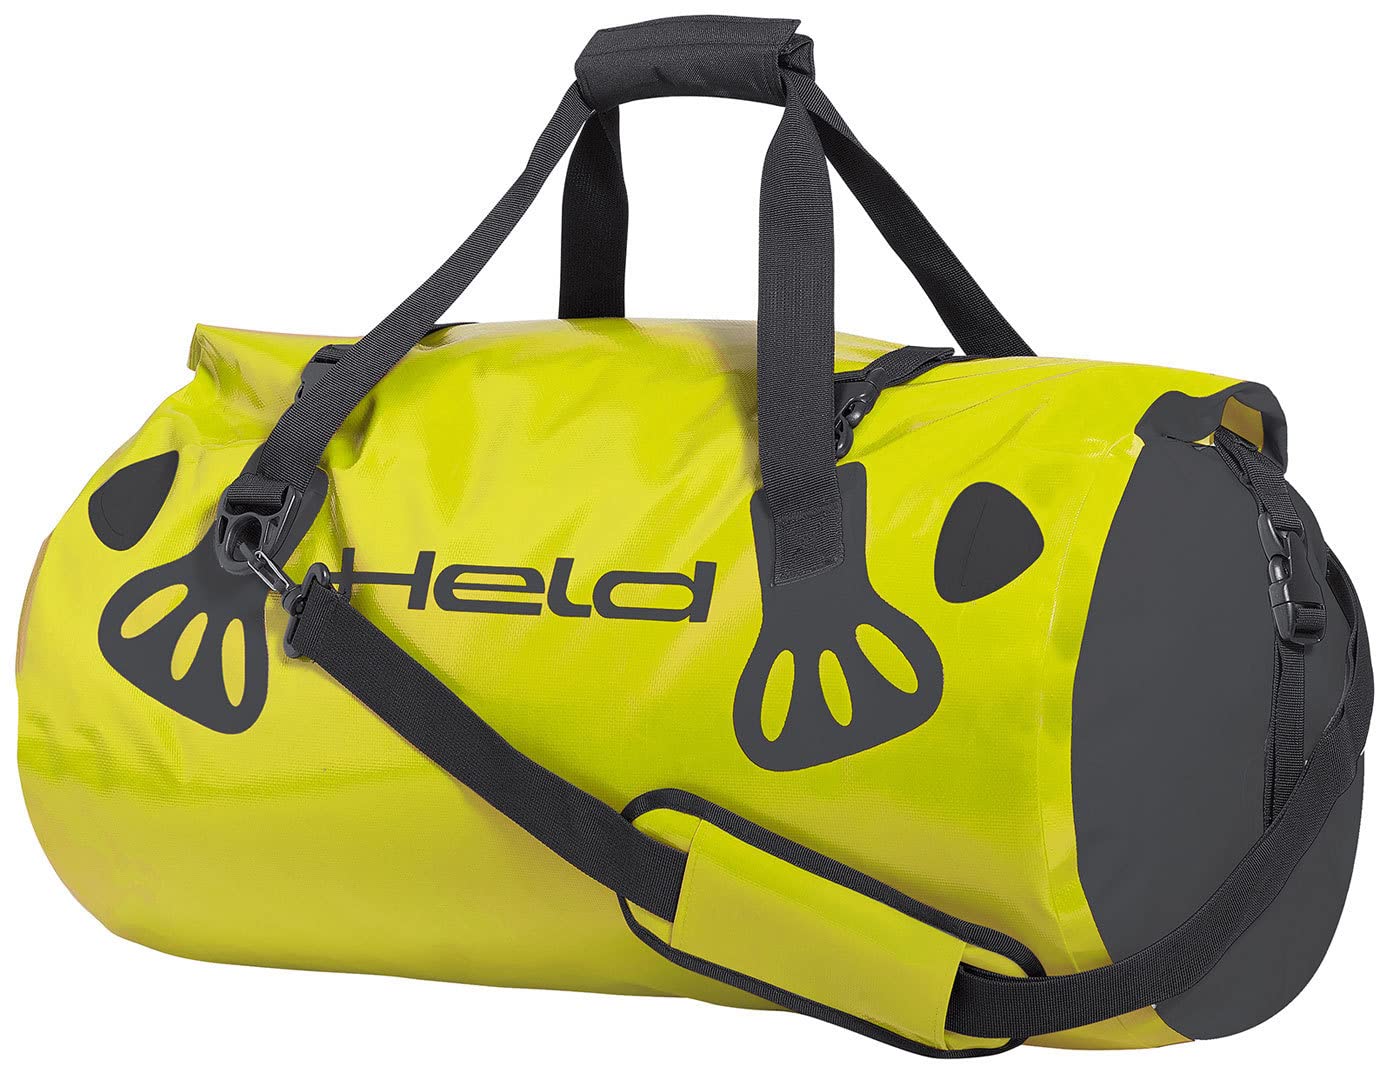 Held Carry-Bag Black/Fluorescent Yellow 60L von Held